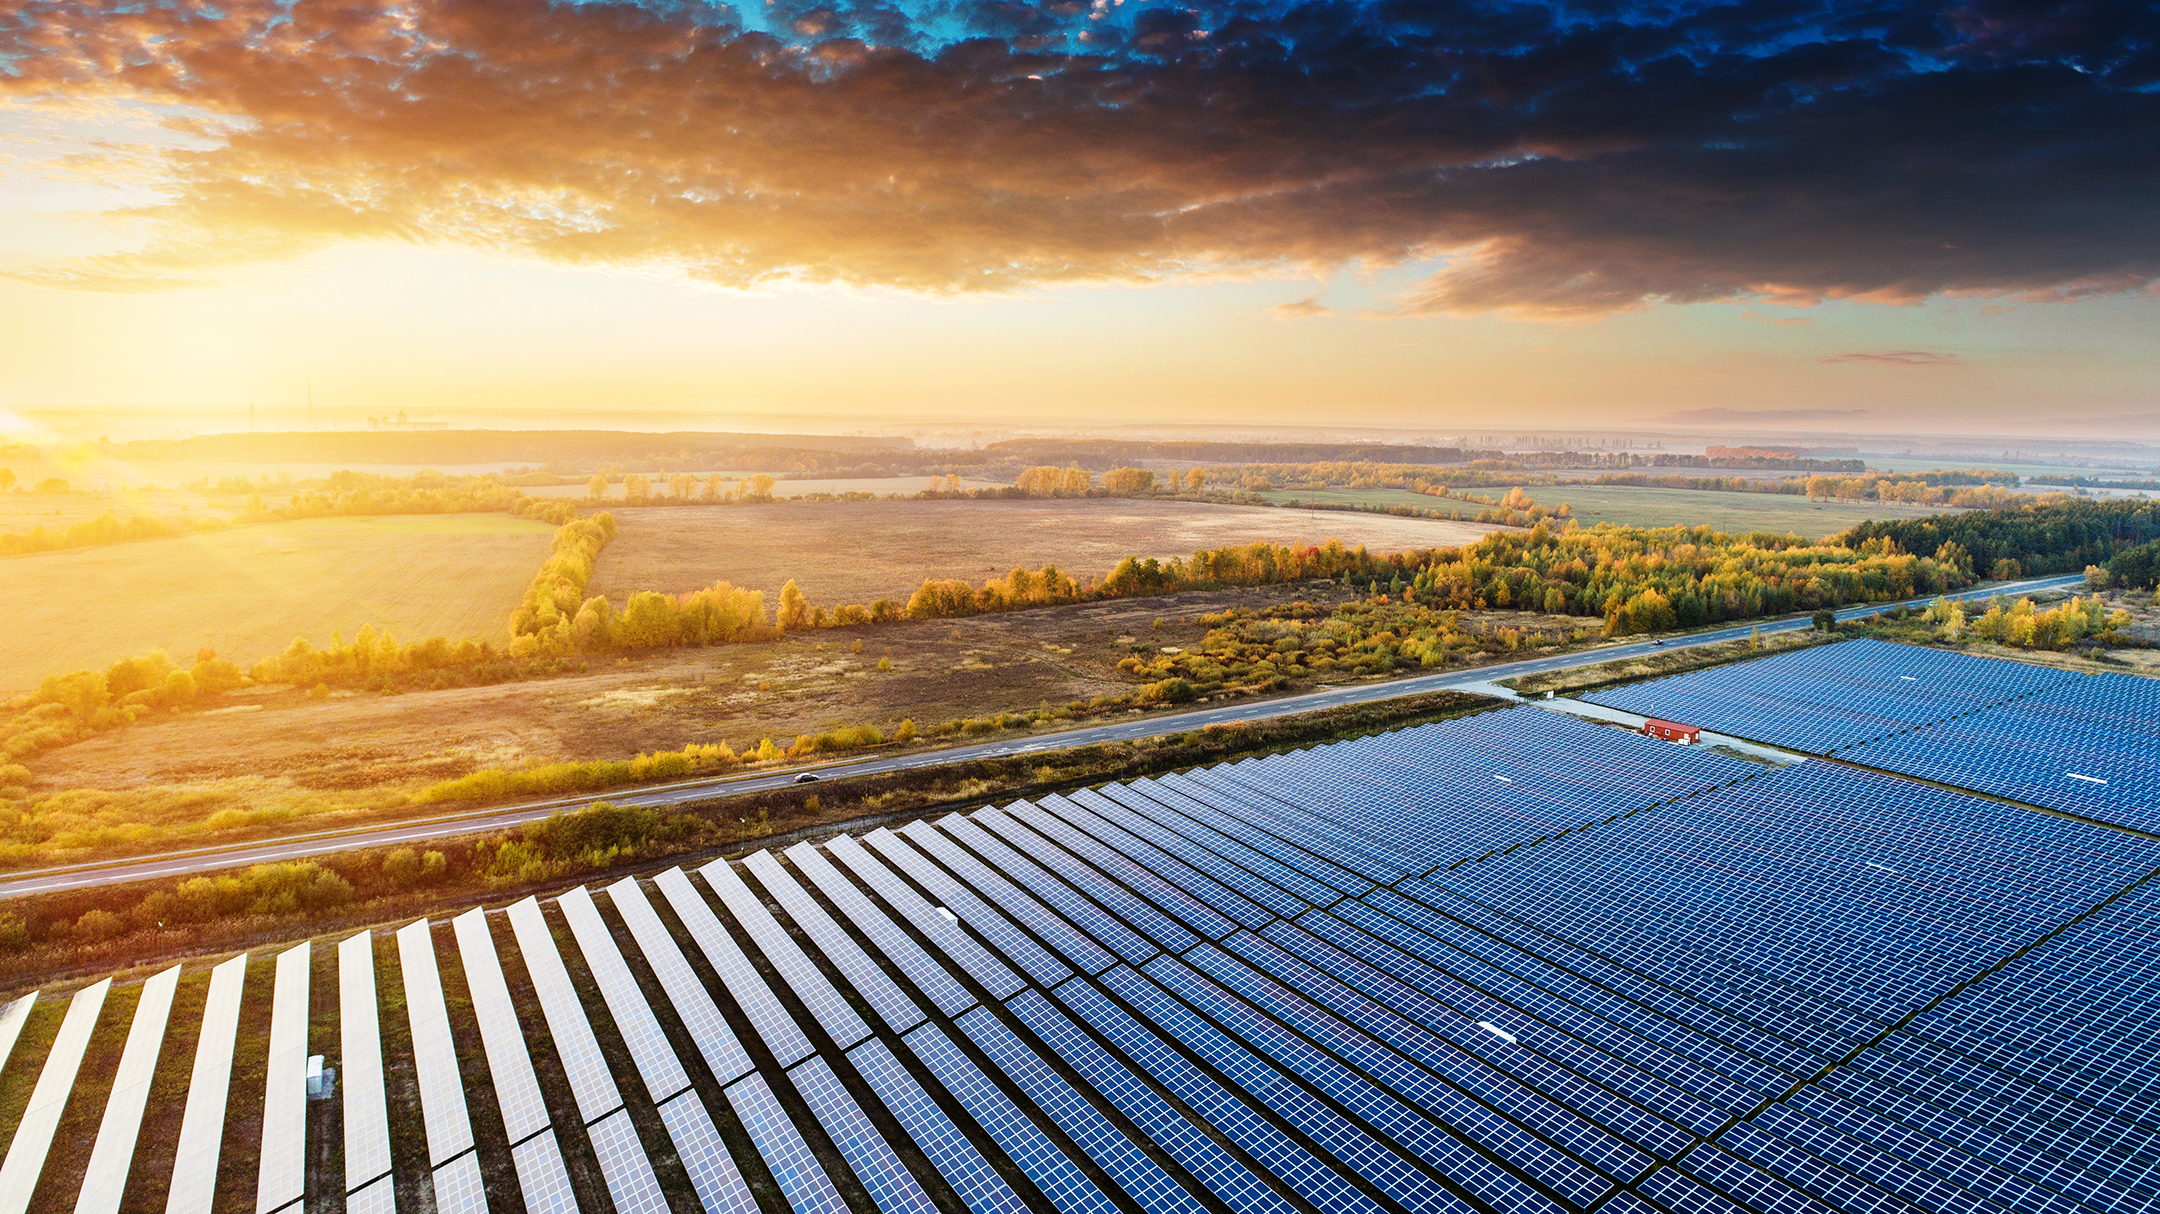 Skarta Energyn ja Solarigon 61 miljoonan euron aurinkopuistoille myönnettiin hankkeen mahdollistava investointituki